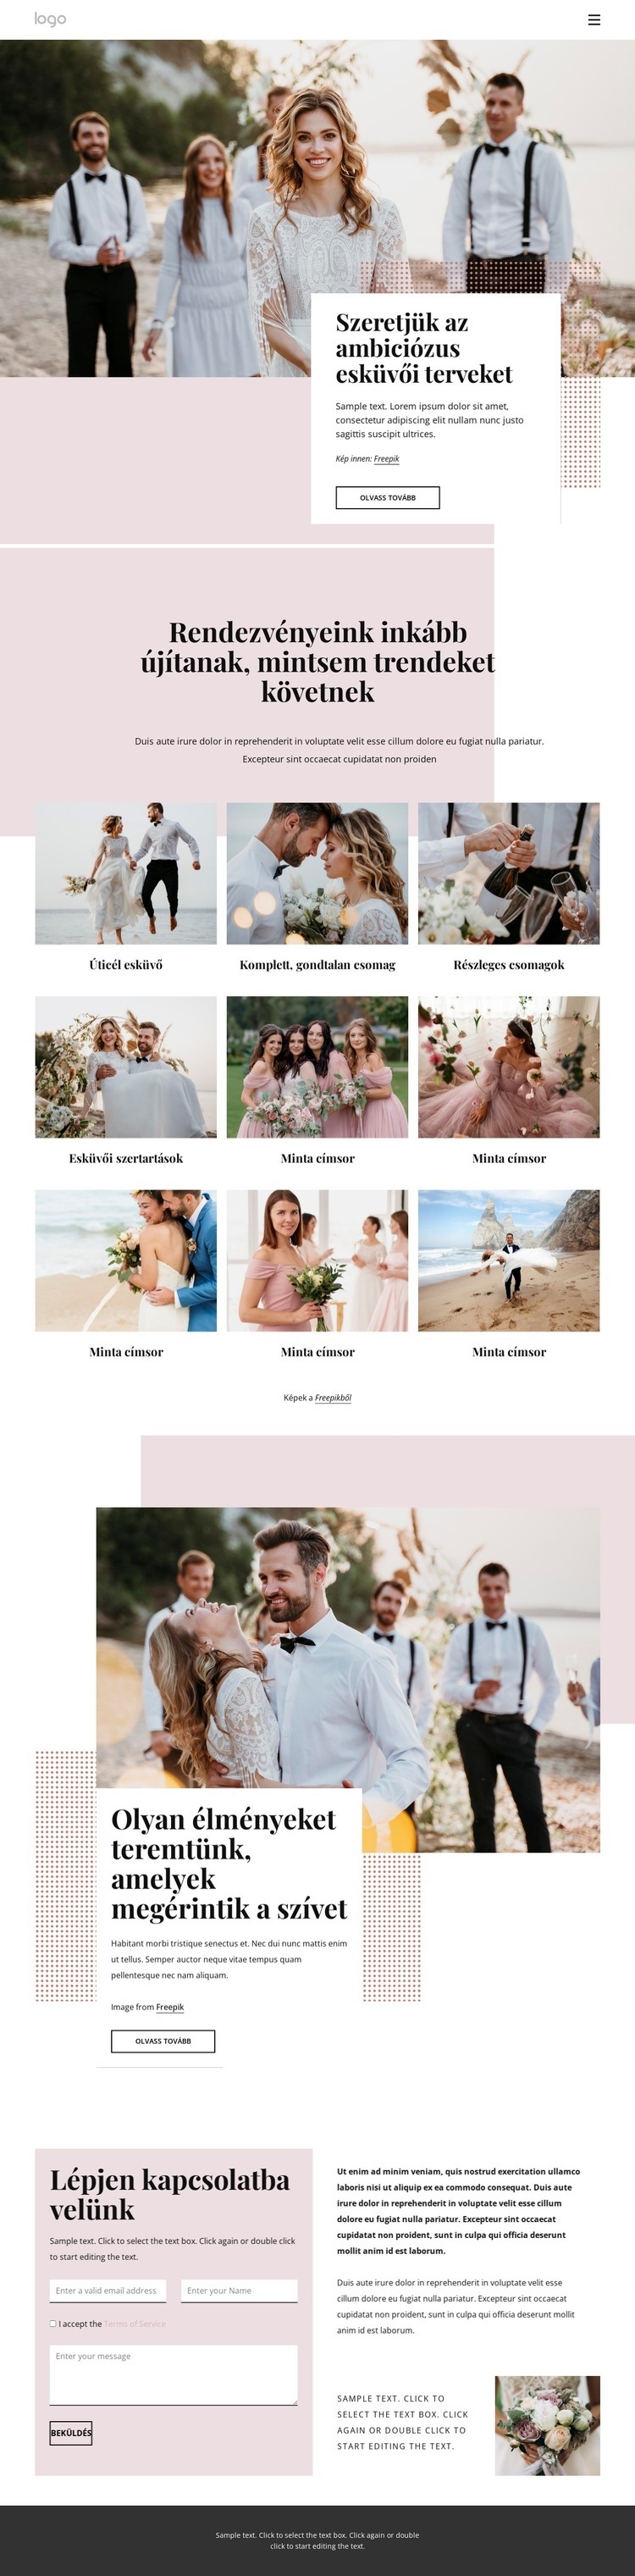 Szeretjük az ambiciózus esküvői terveket CSS sablon